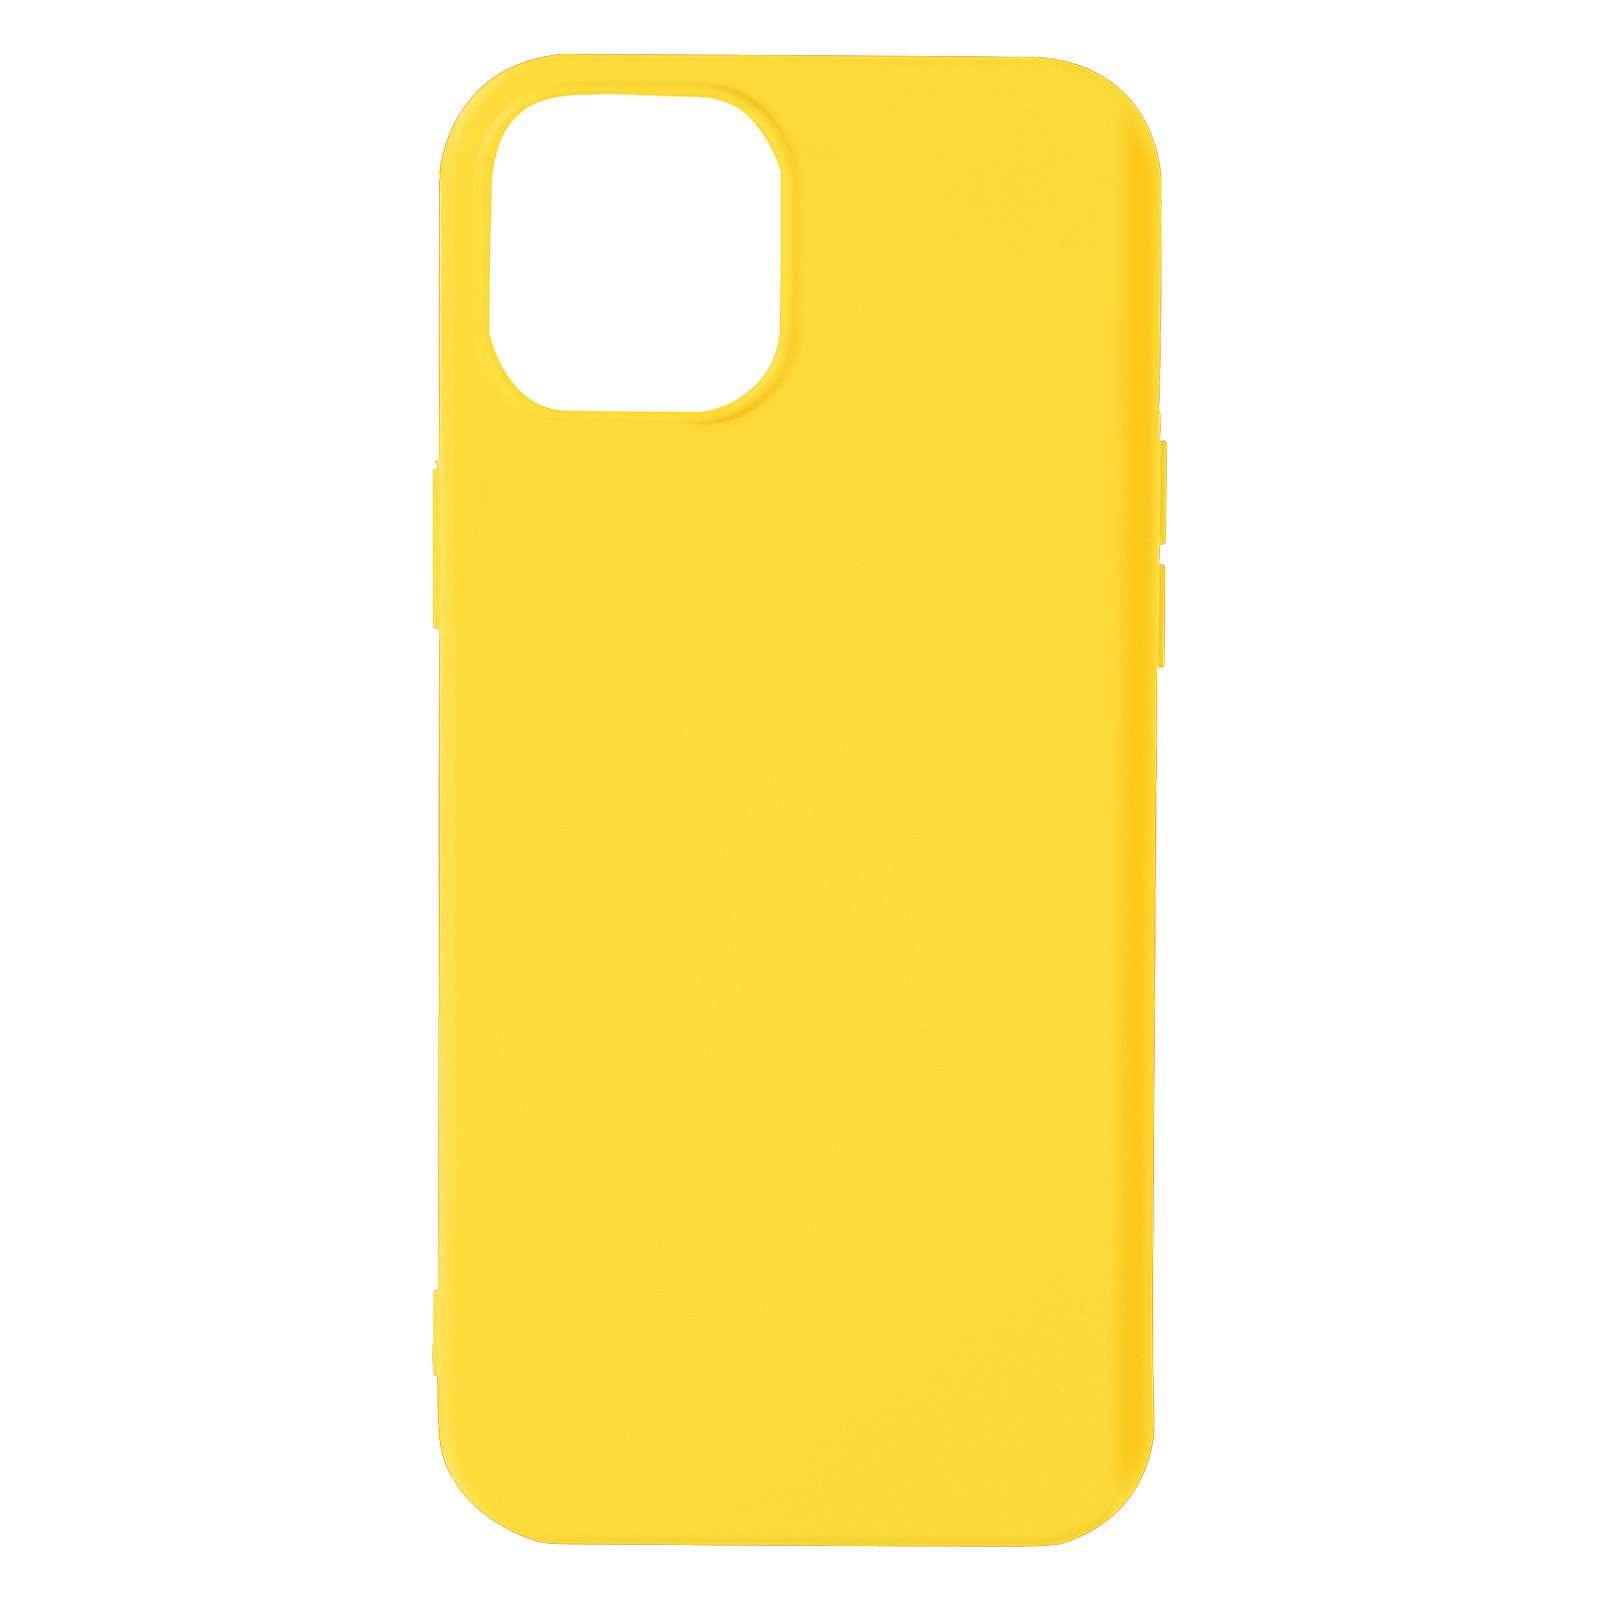 Avizar Coque pour iPhone 13 Mini Silicone Semi-rigide Finition Soft-touch Fine jaune - Coque telephone Avizar